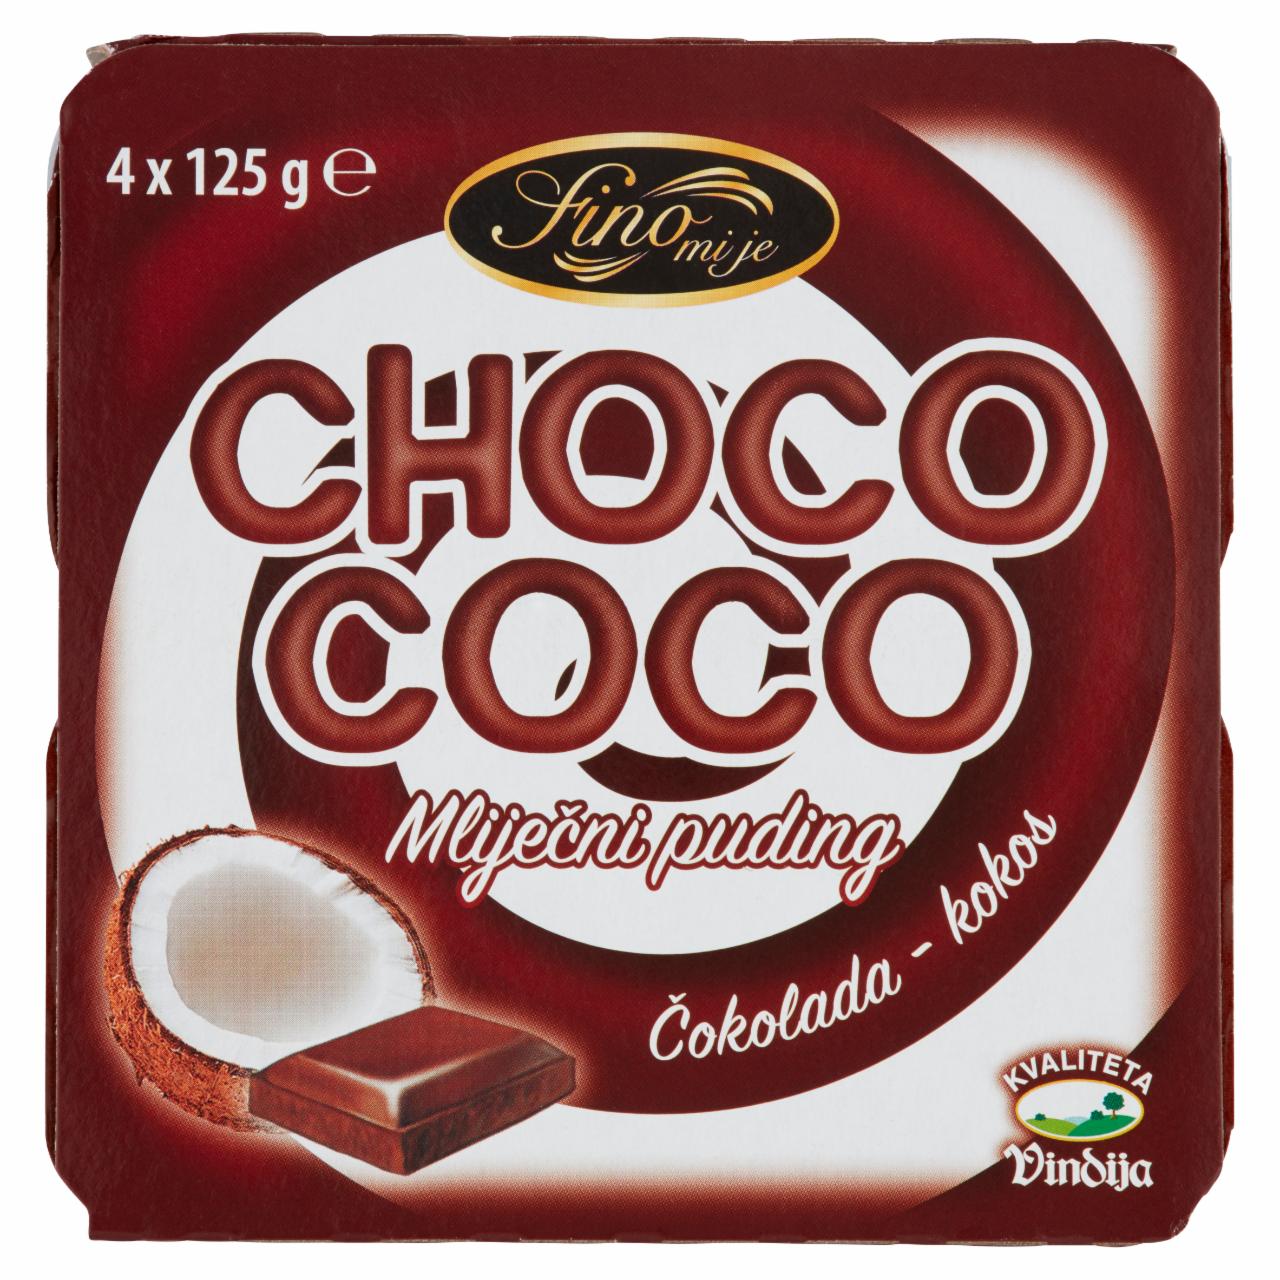 Képek - Choco-Coco Kókusz és Csokoládé puding spirál 4 x 125 g